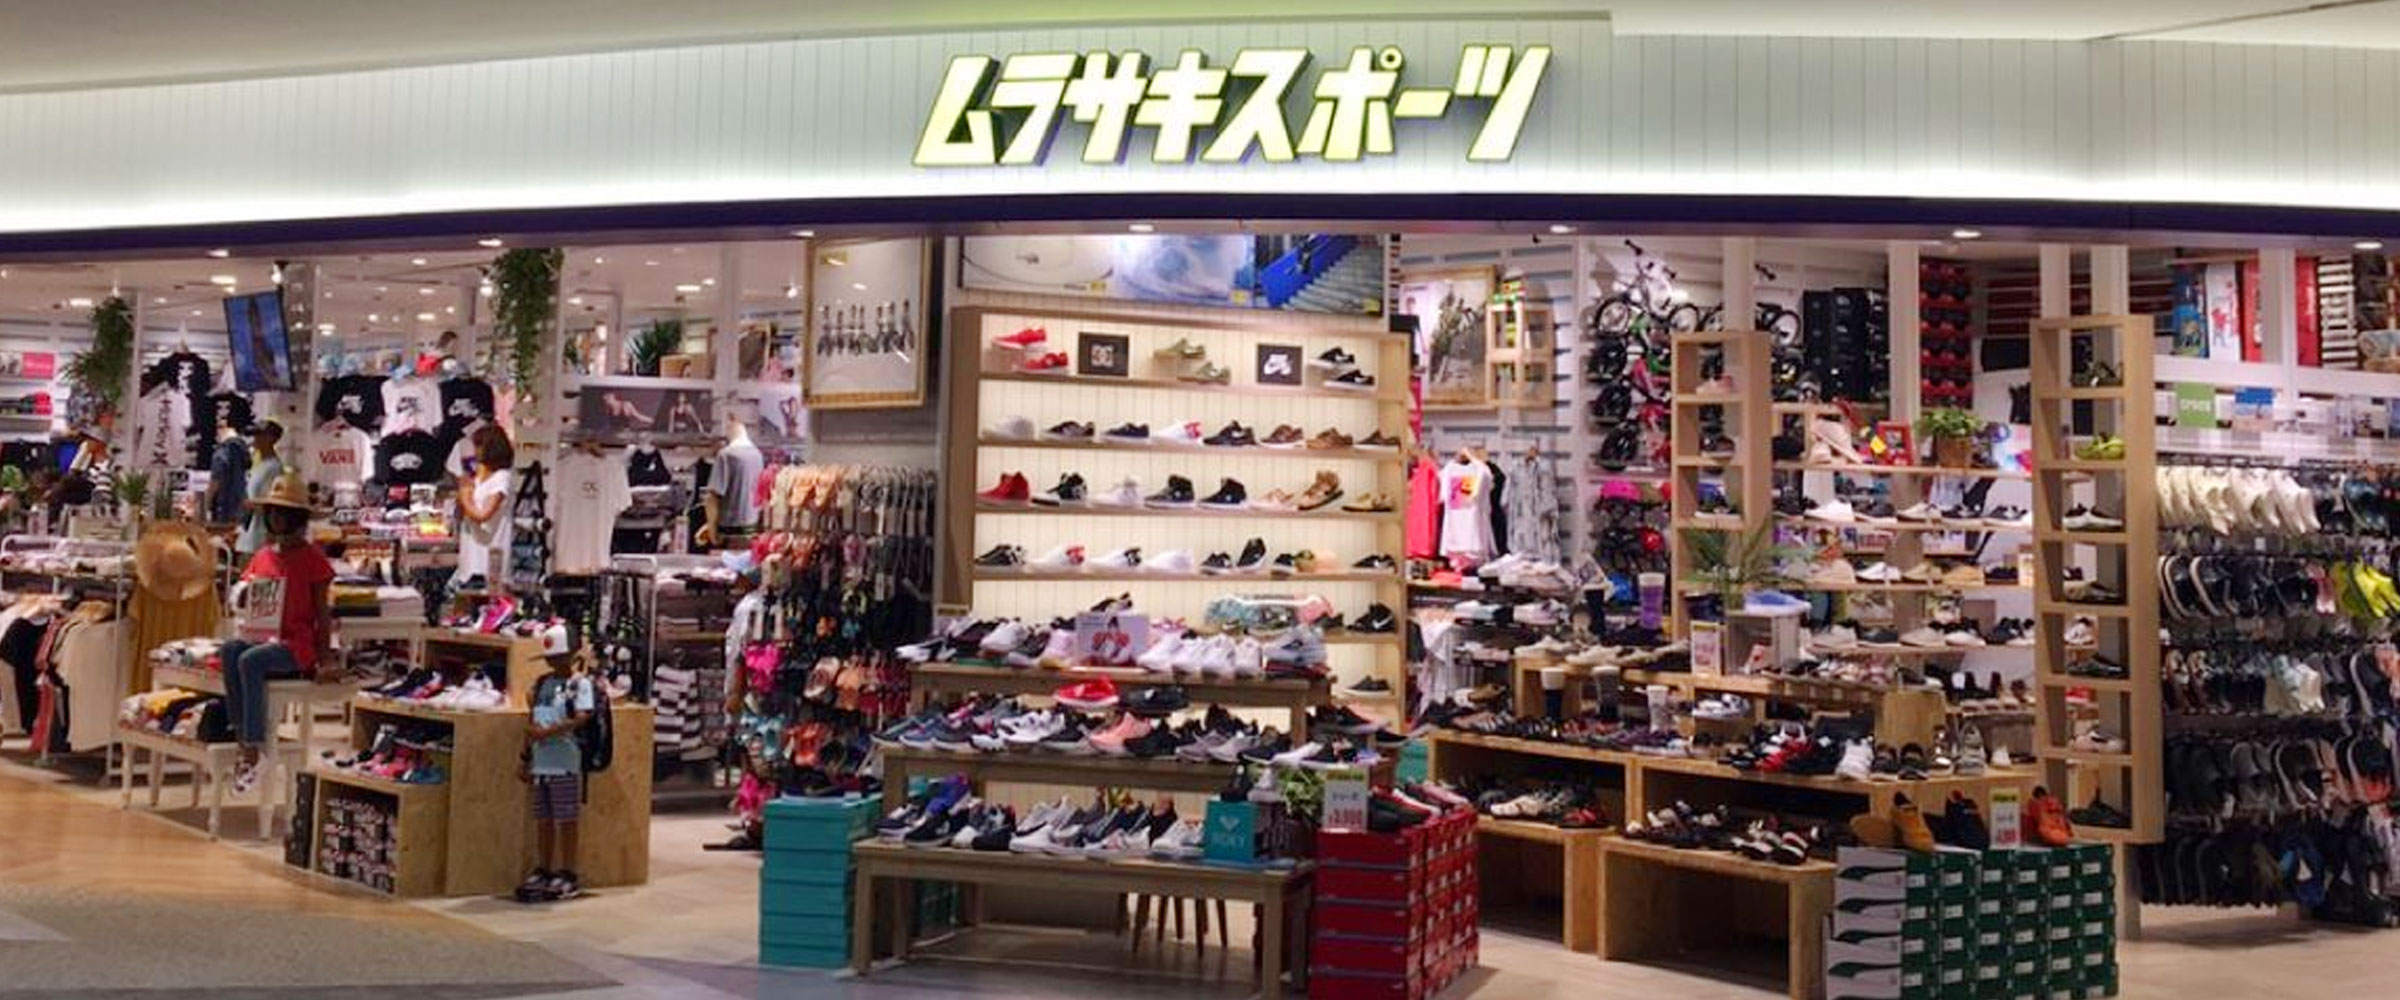 ｲｵﾝﾓｰﾙ成田 の店舗画像